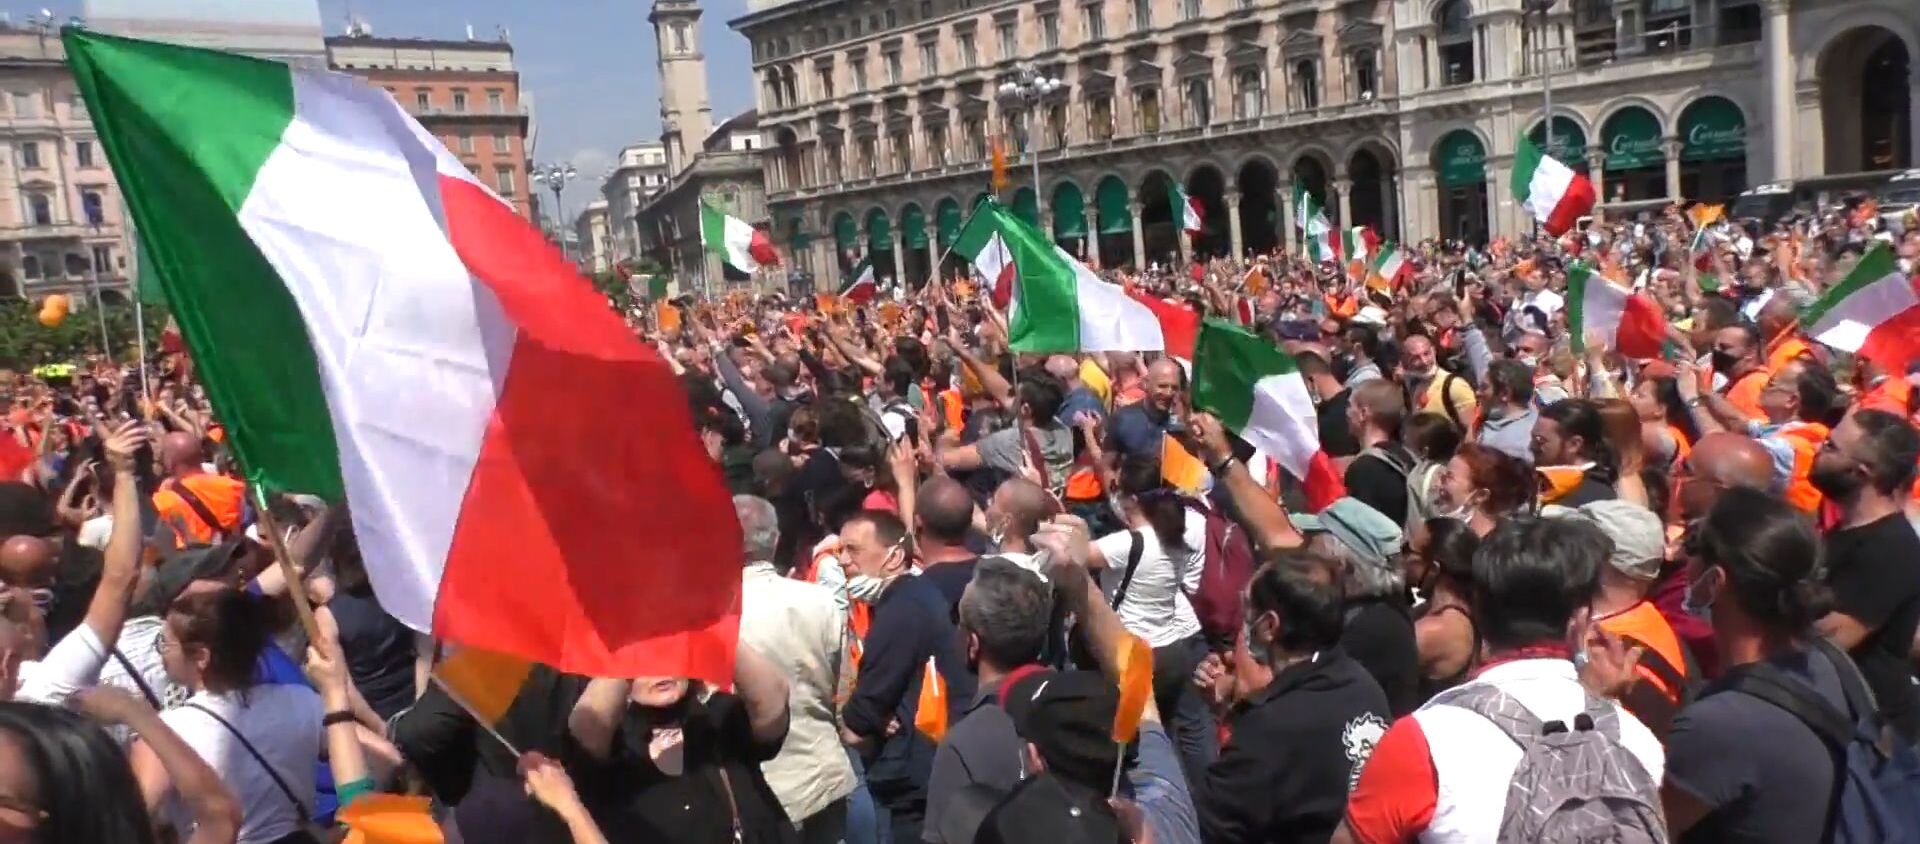 Оранжевые жилеты: Италию захлестнула волна протестов против правительства - Sputnik Латвия, 1920, 04.06.2020